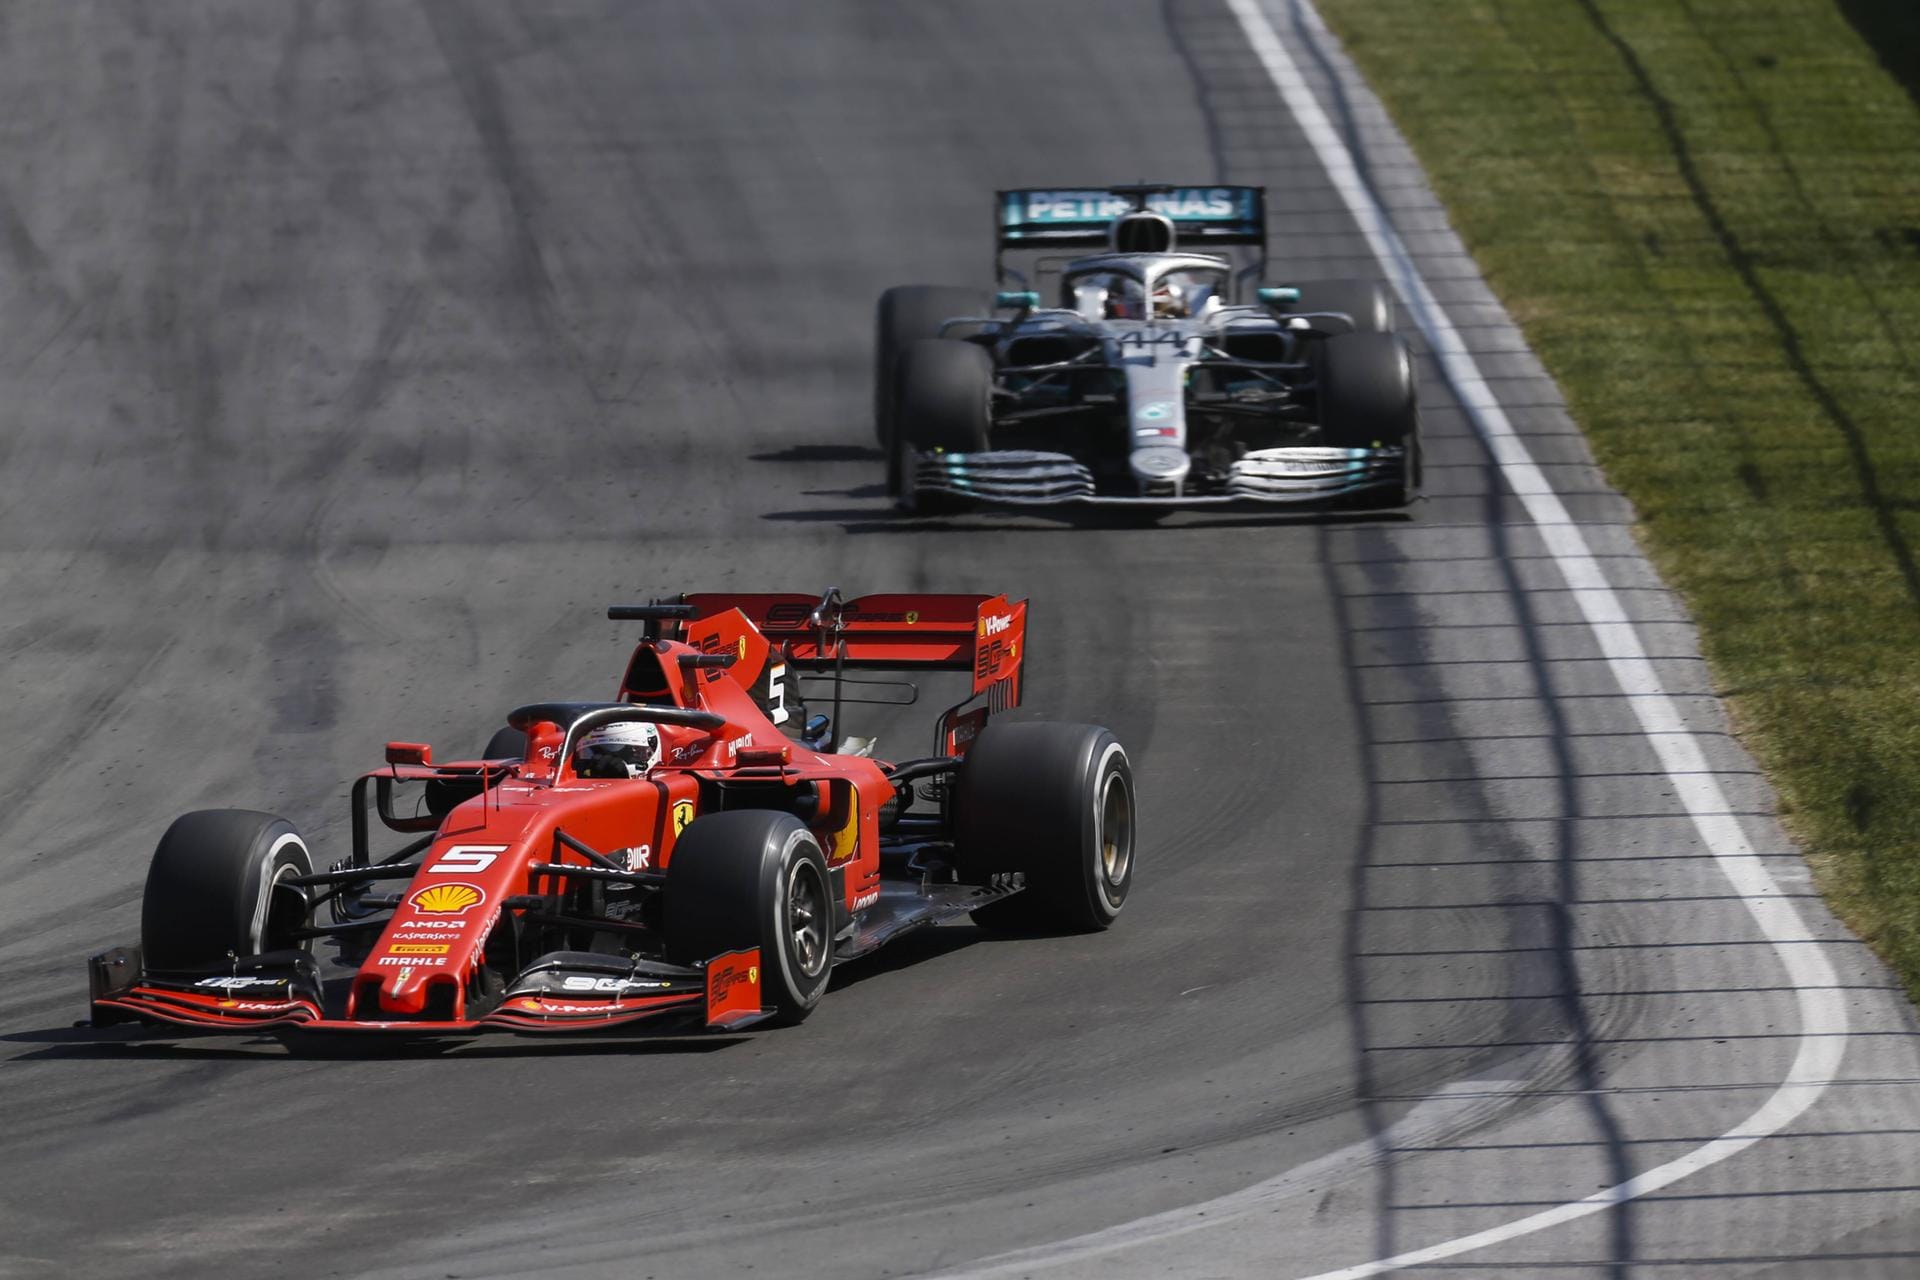 Sebastian Vettel (vorne) war bis zu seinem Fehler vor Lewis Hamilton. Für die Strafe hatte er schon auf der Strecke kein Verständnis: "Wo zur Hölle sollte ich denn hin? Das ist nicht fair! Sie stehlen uns das Rennen."